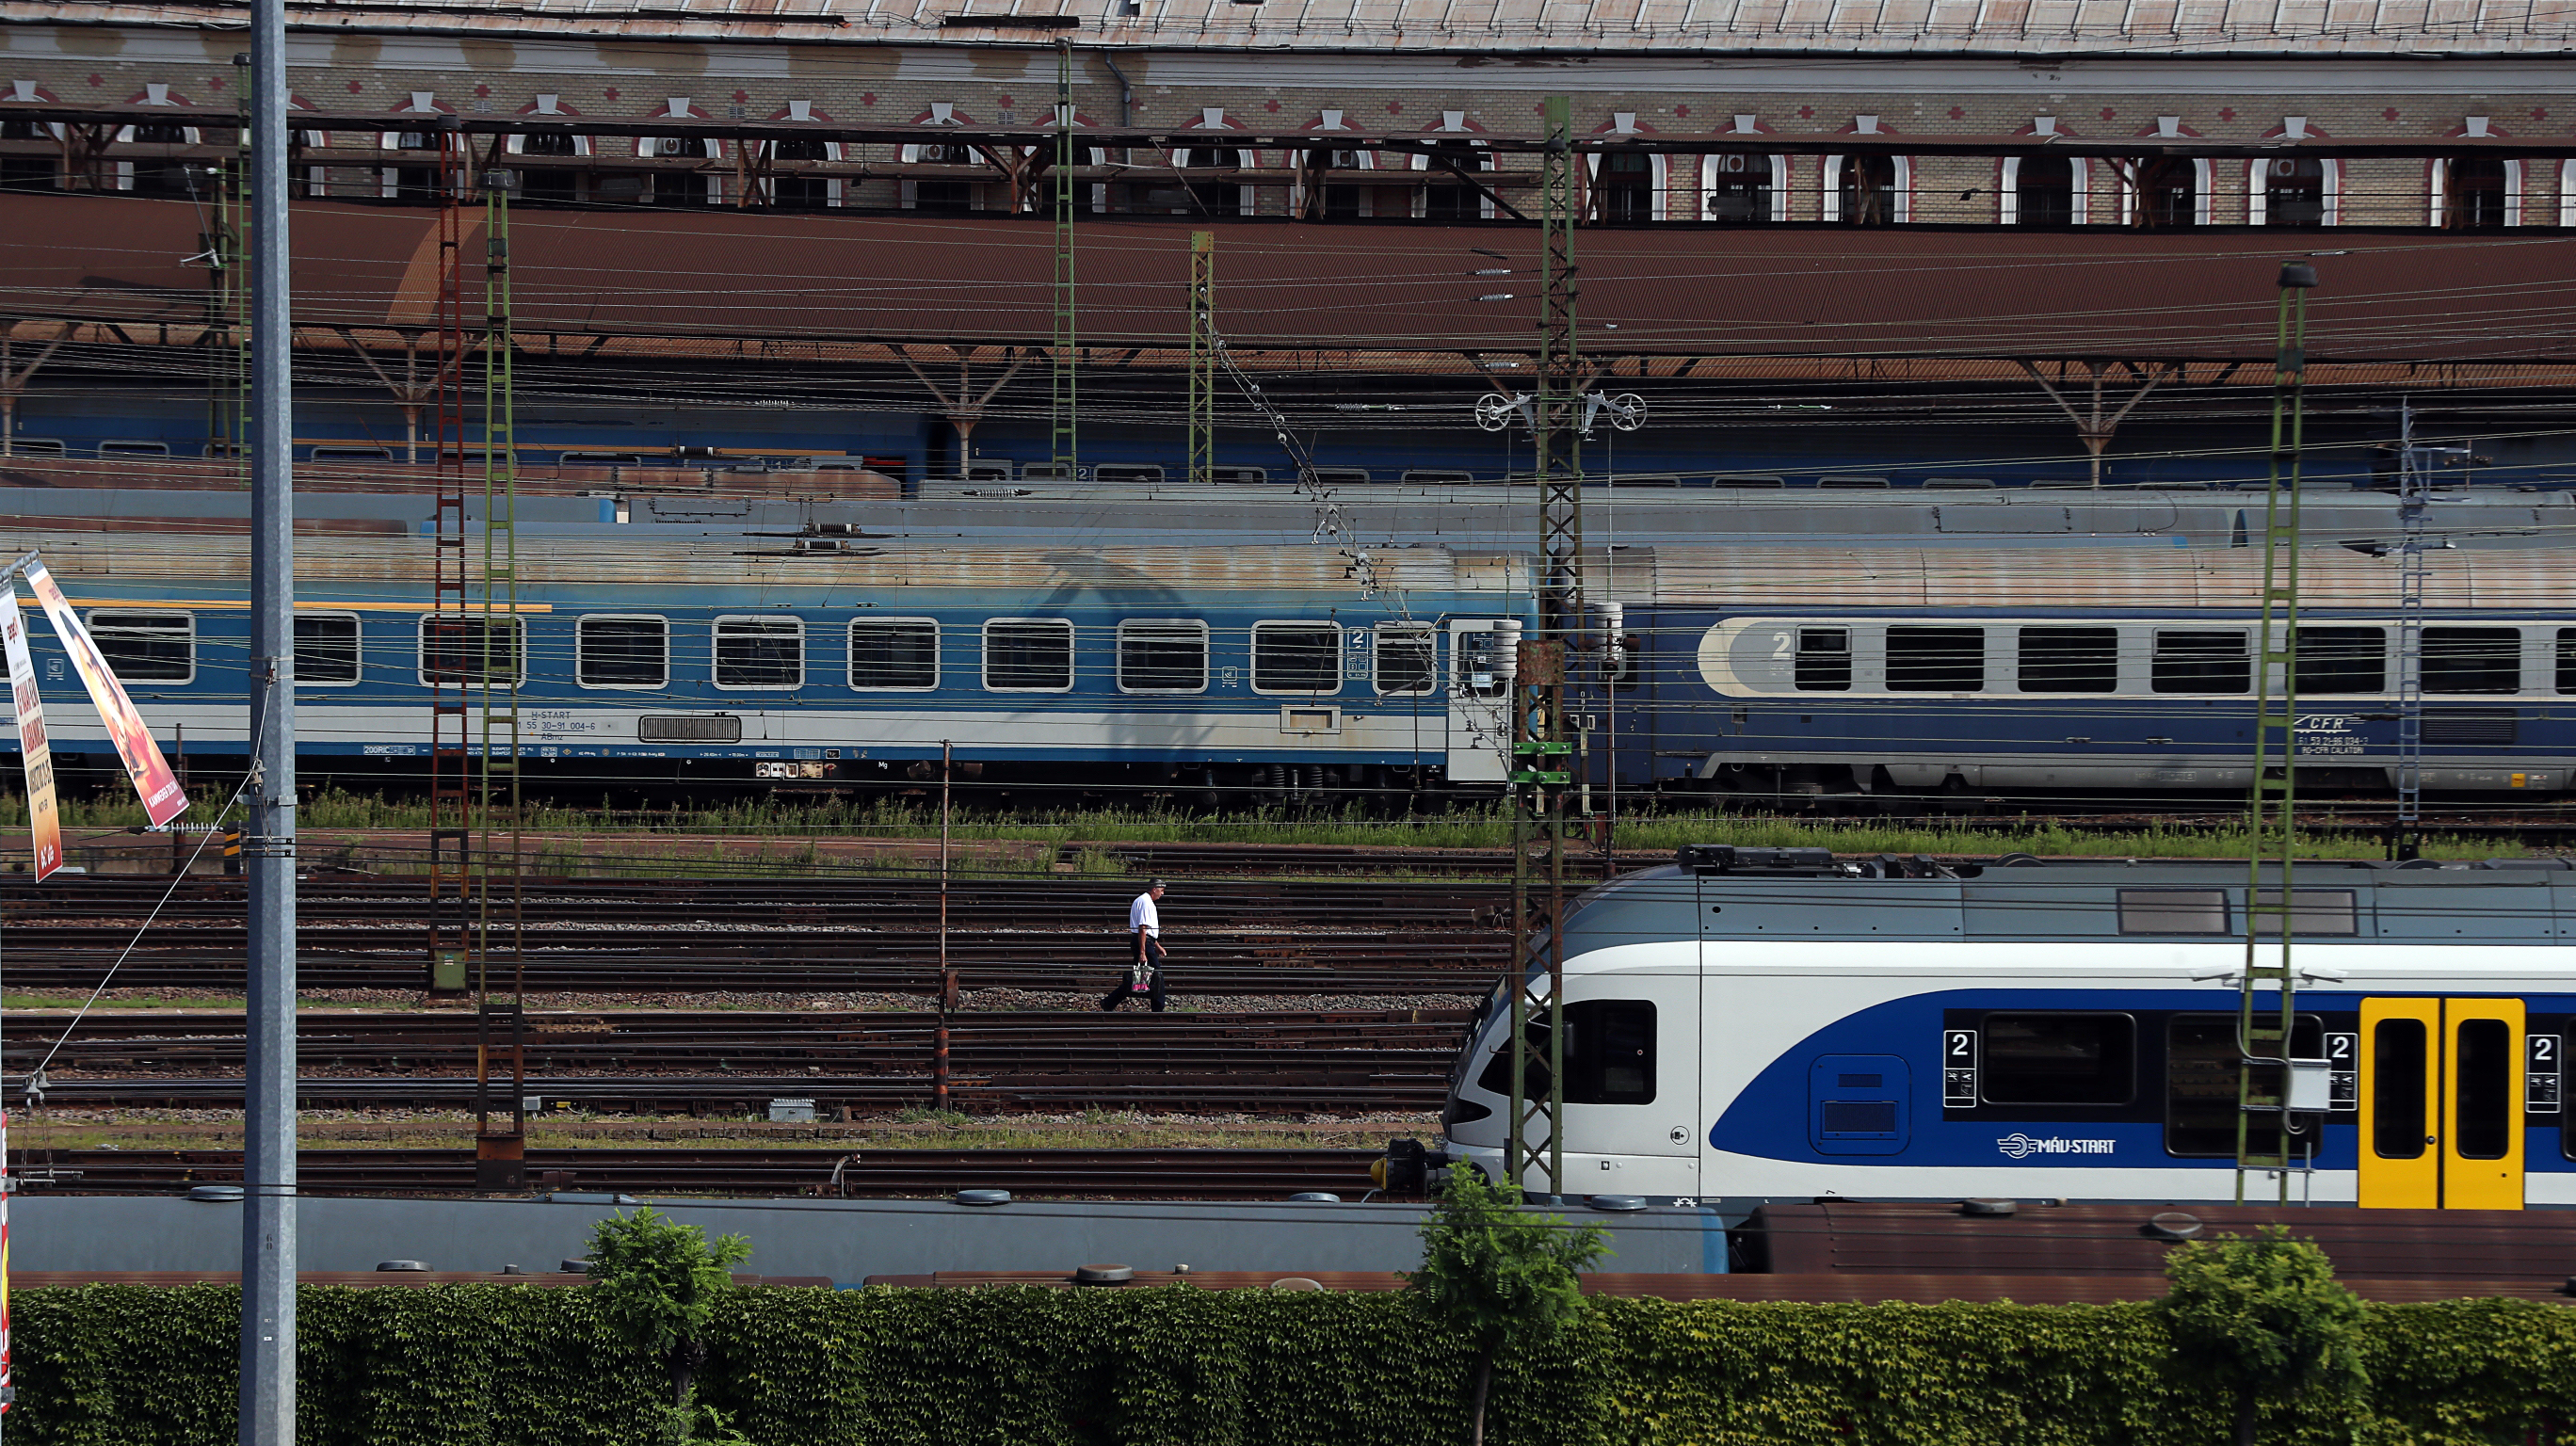 Utasok rekedtek a sötét, lezárt vonaton a Keleti pályaudvaron - Blikk